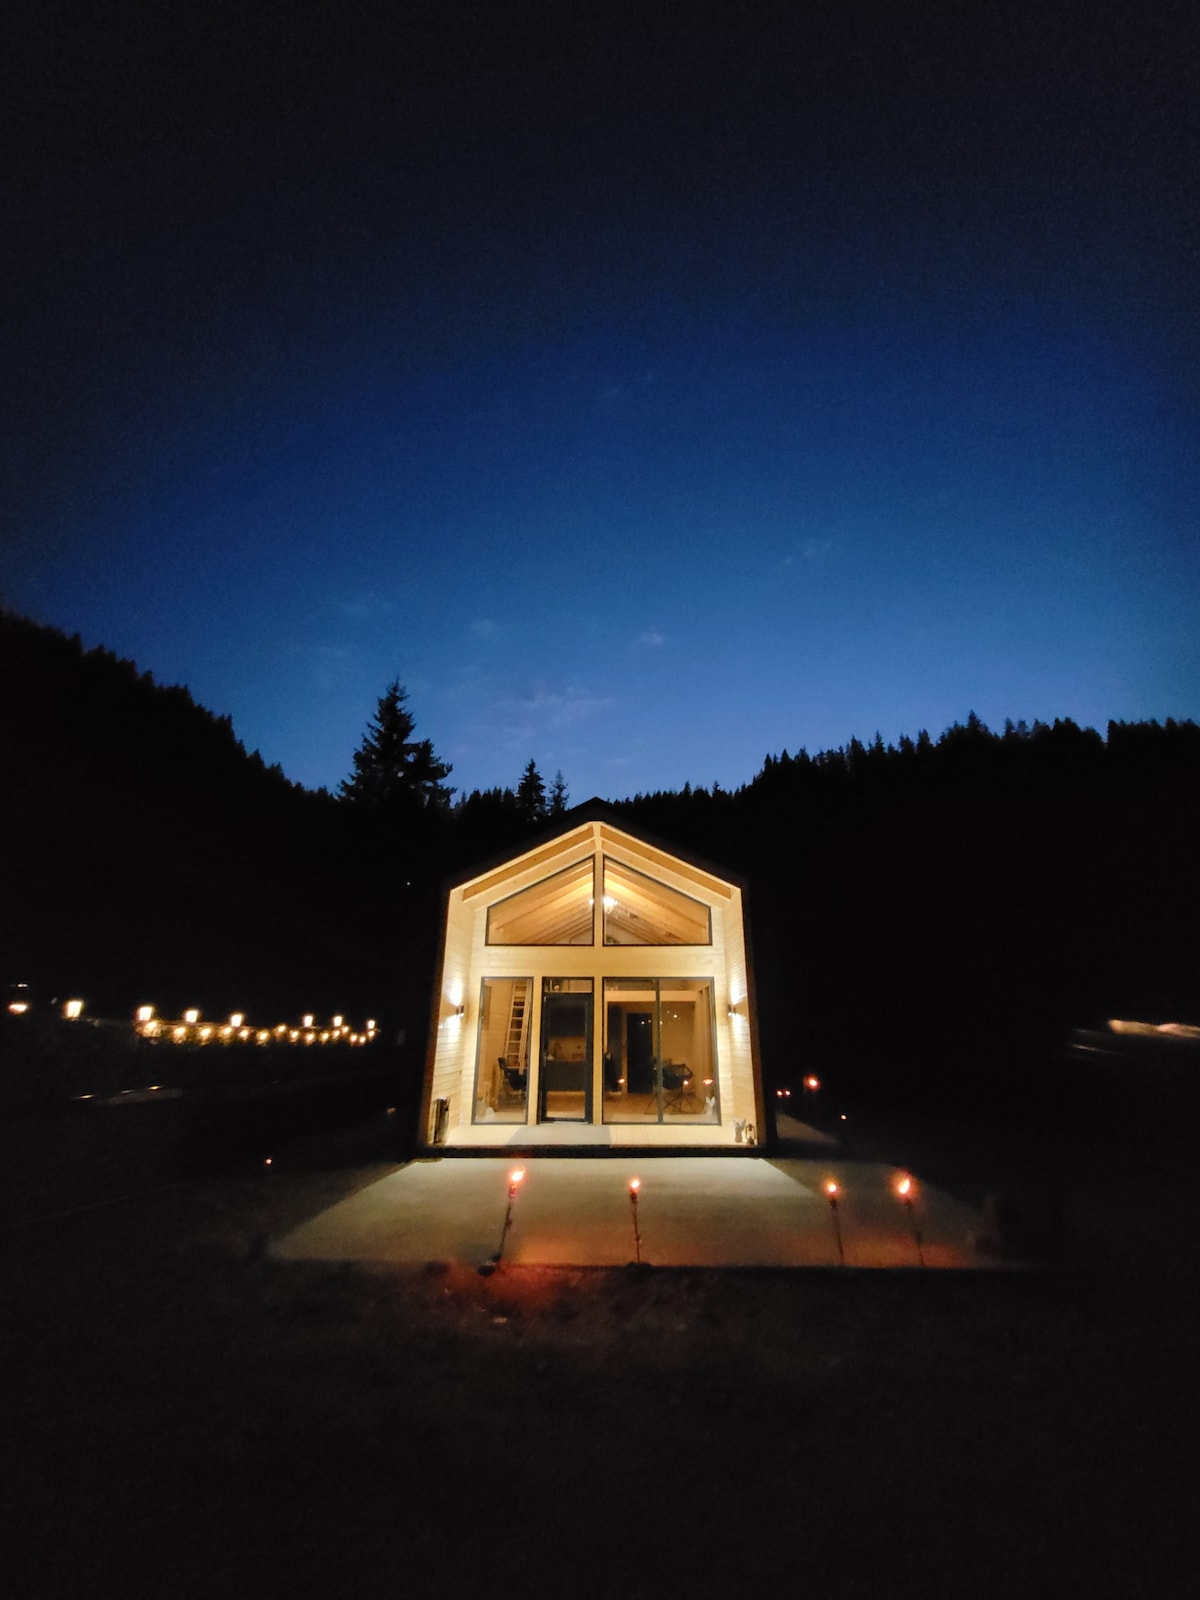 Cucu Zen Nordic Cabin with Mountain View